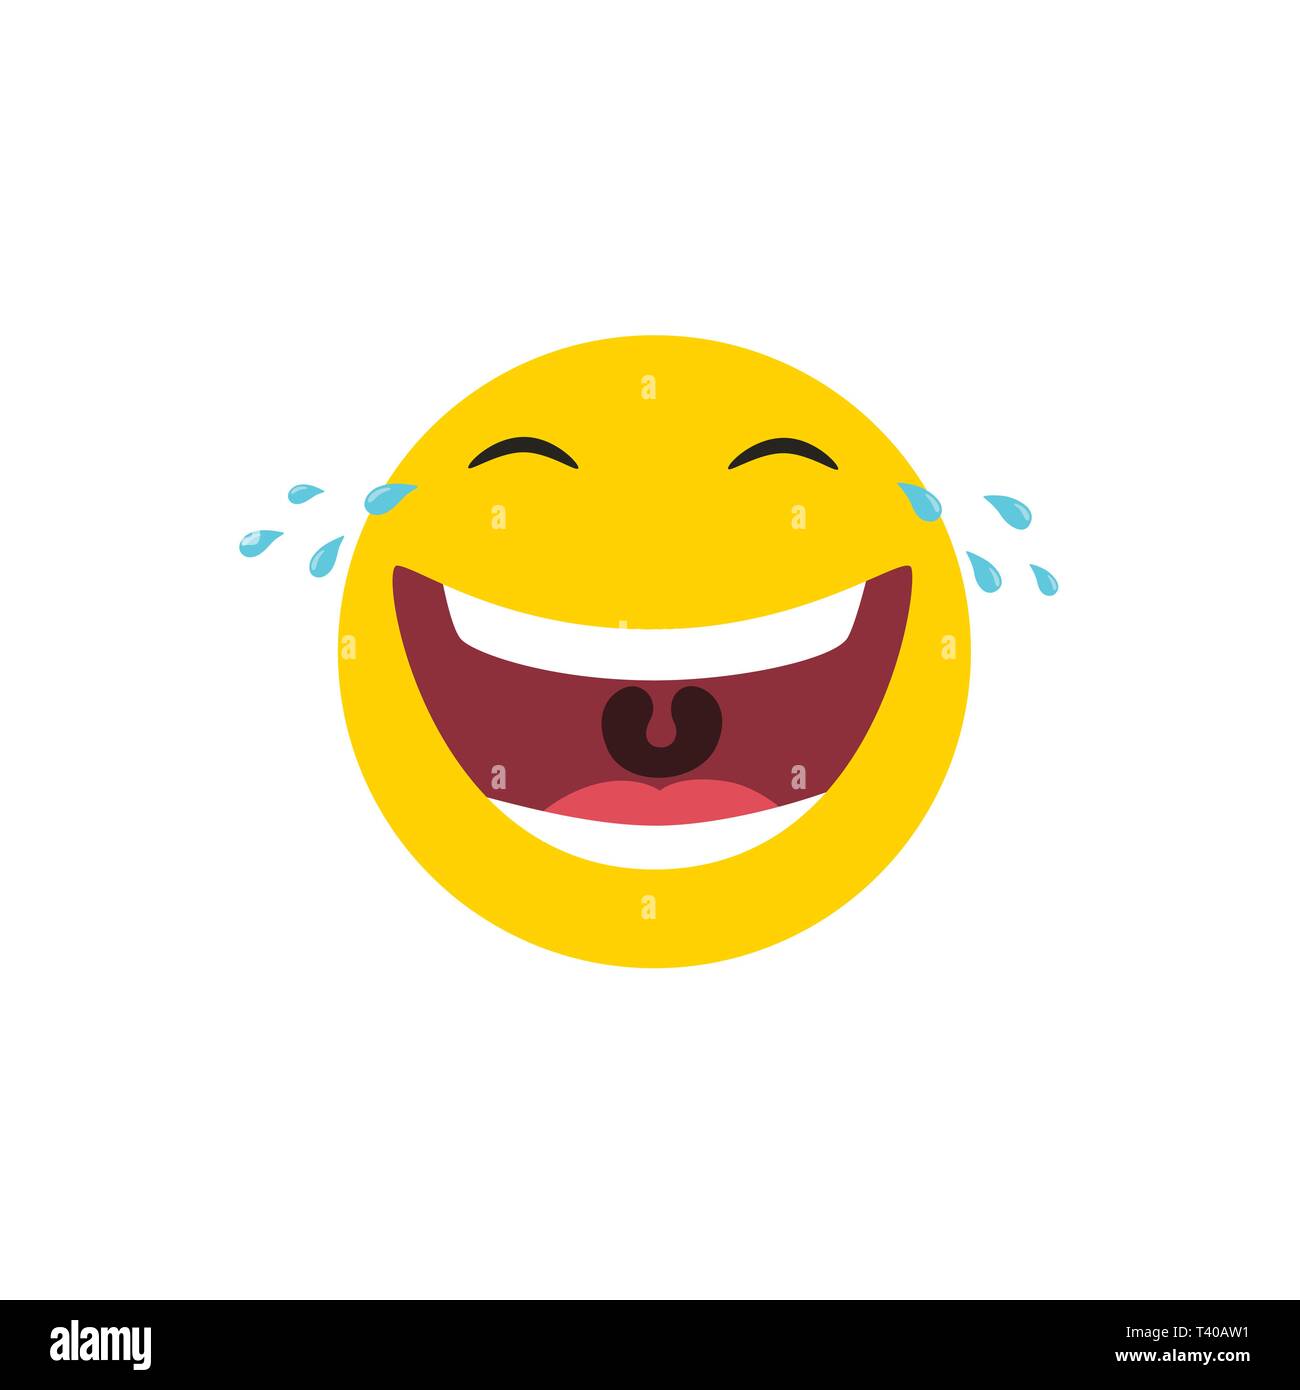 Lachend emoticon mit Tränen der Freude. Vector Illustration. Stock Vektor